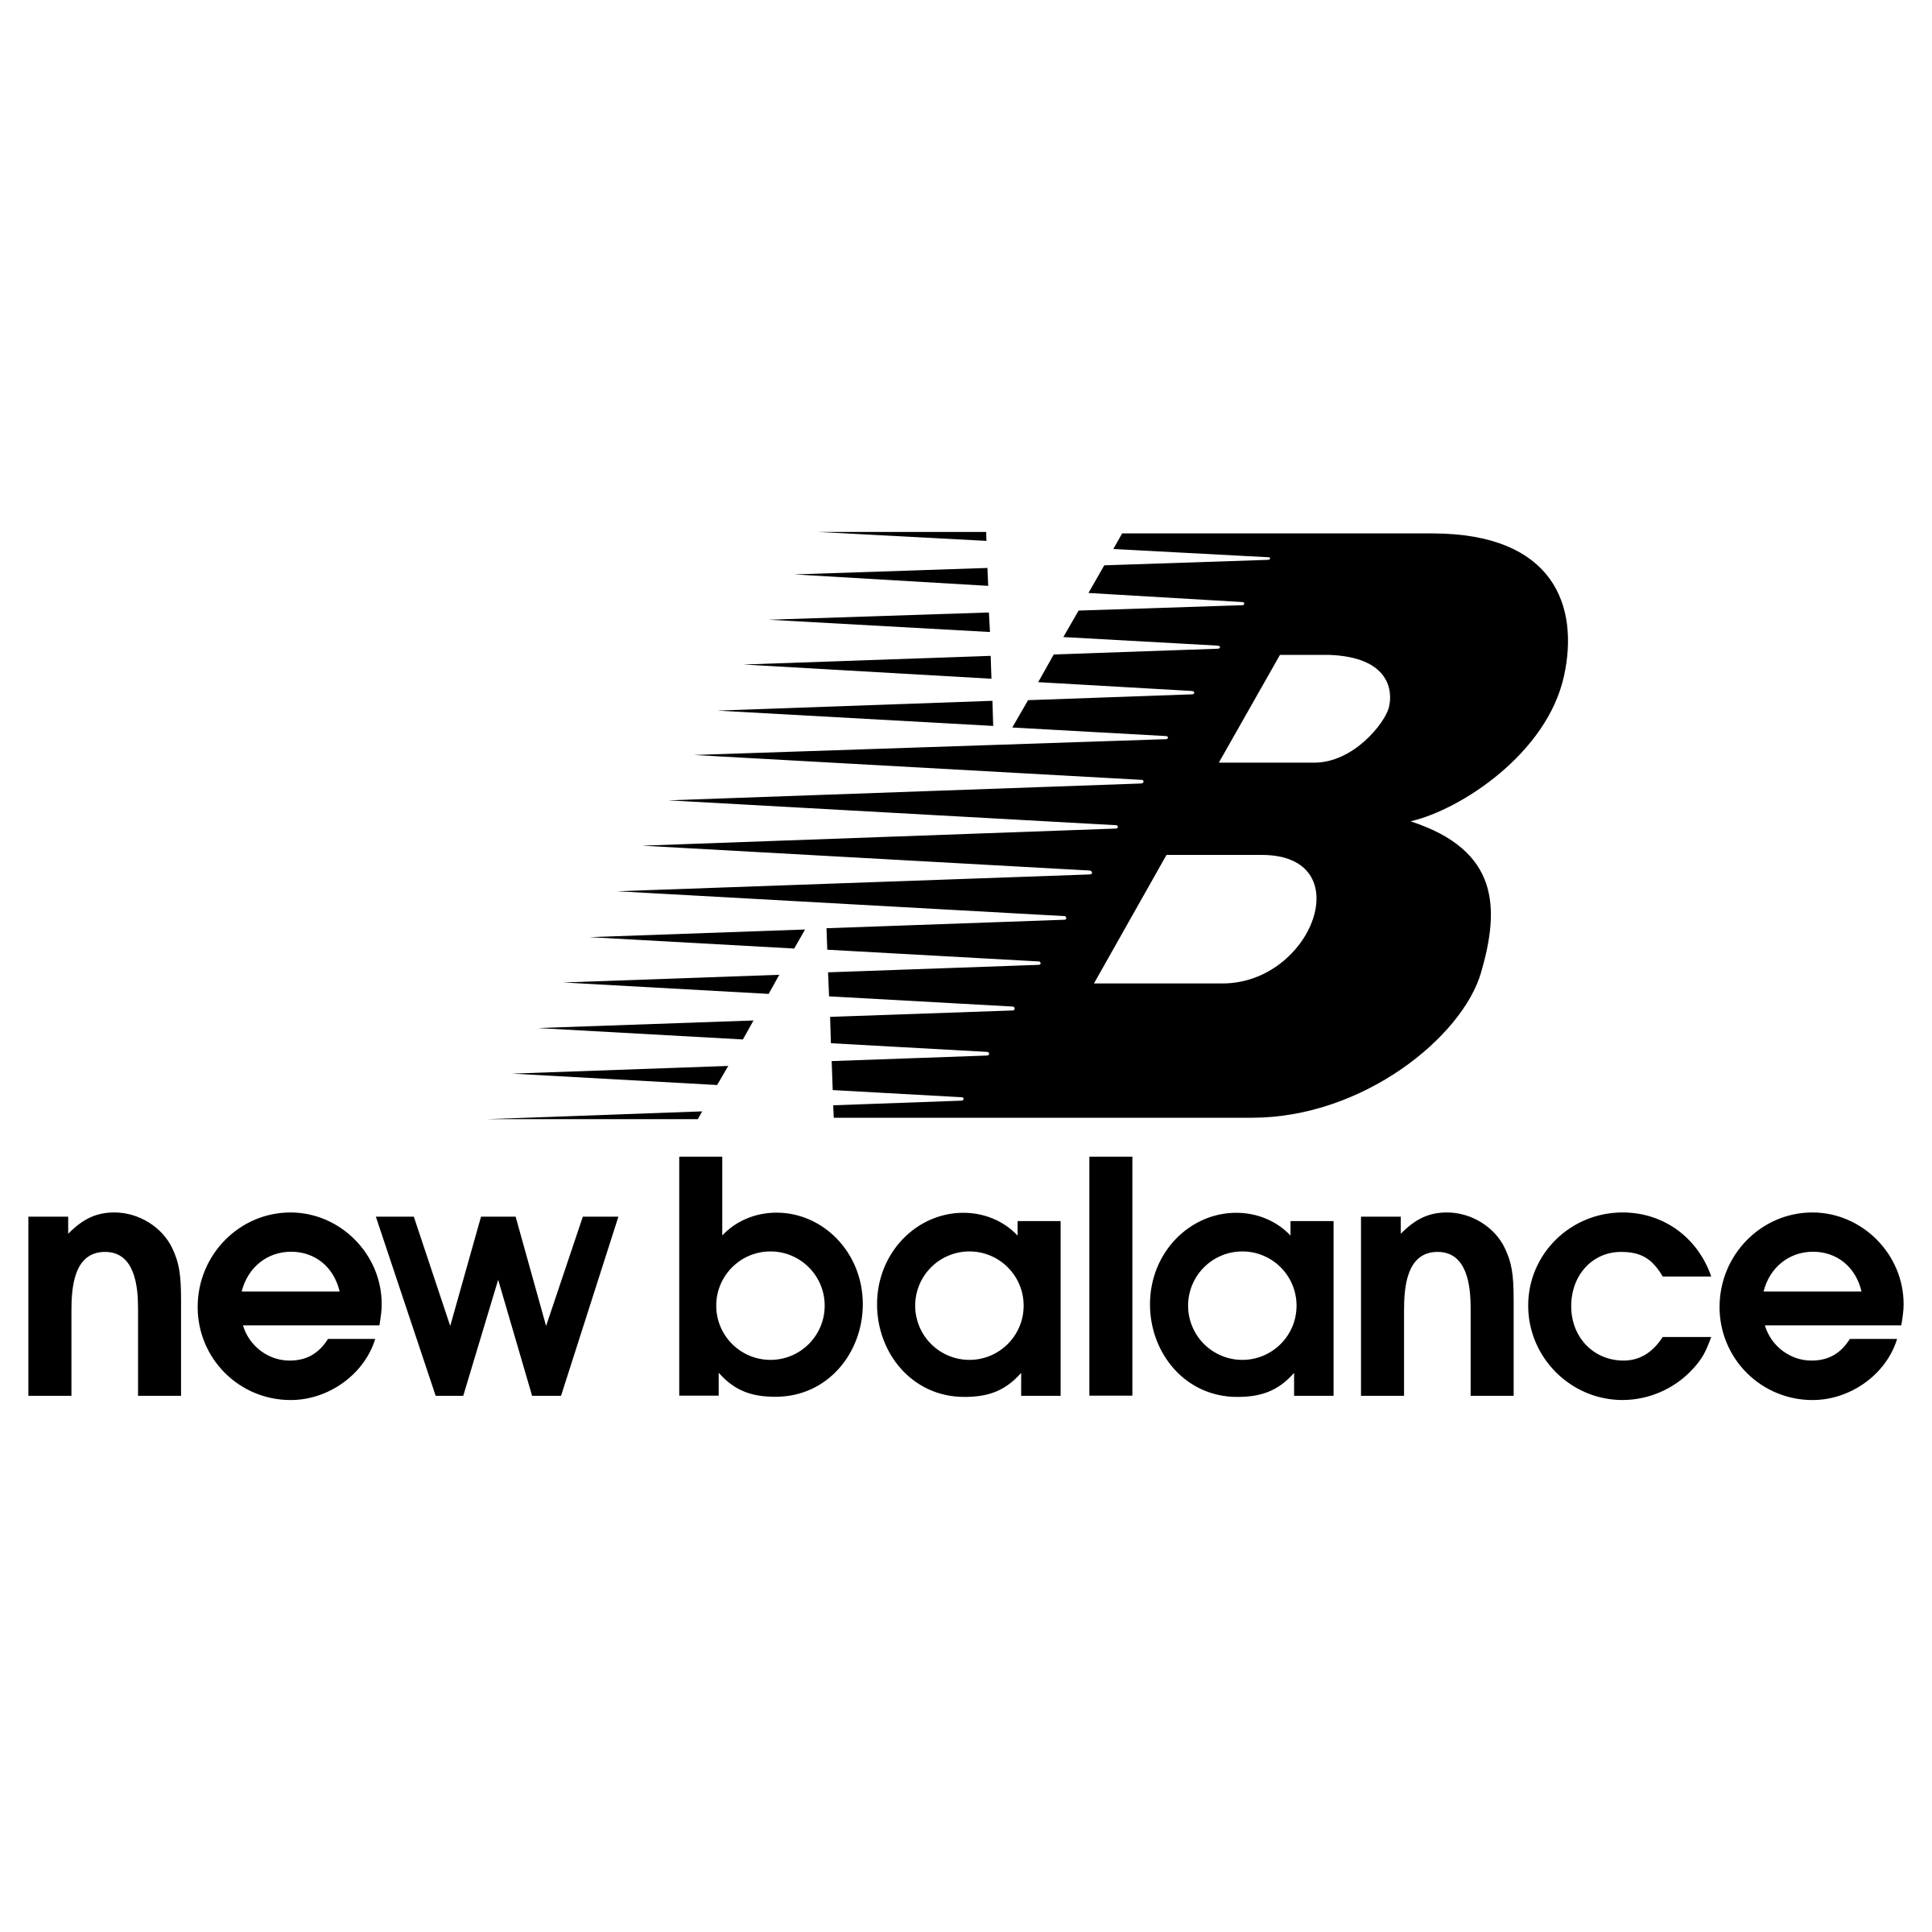 New Balance Logo - New Balance Logo PNG Transparent & SVG Vector